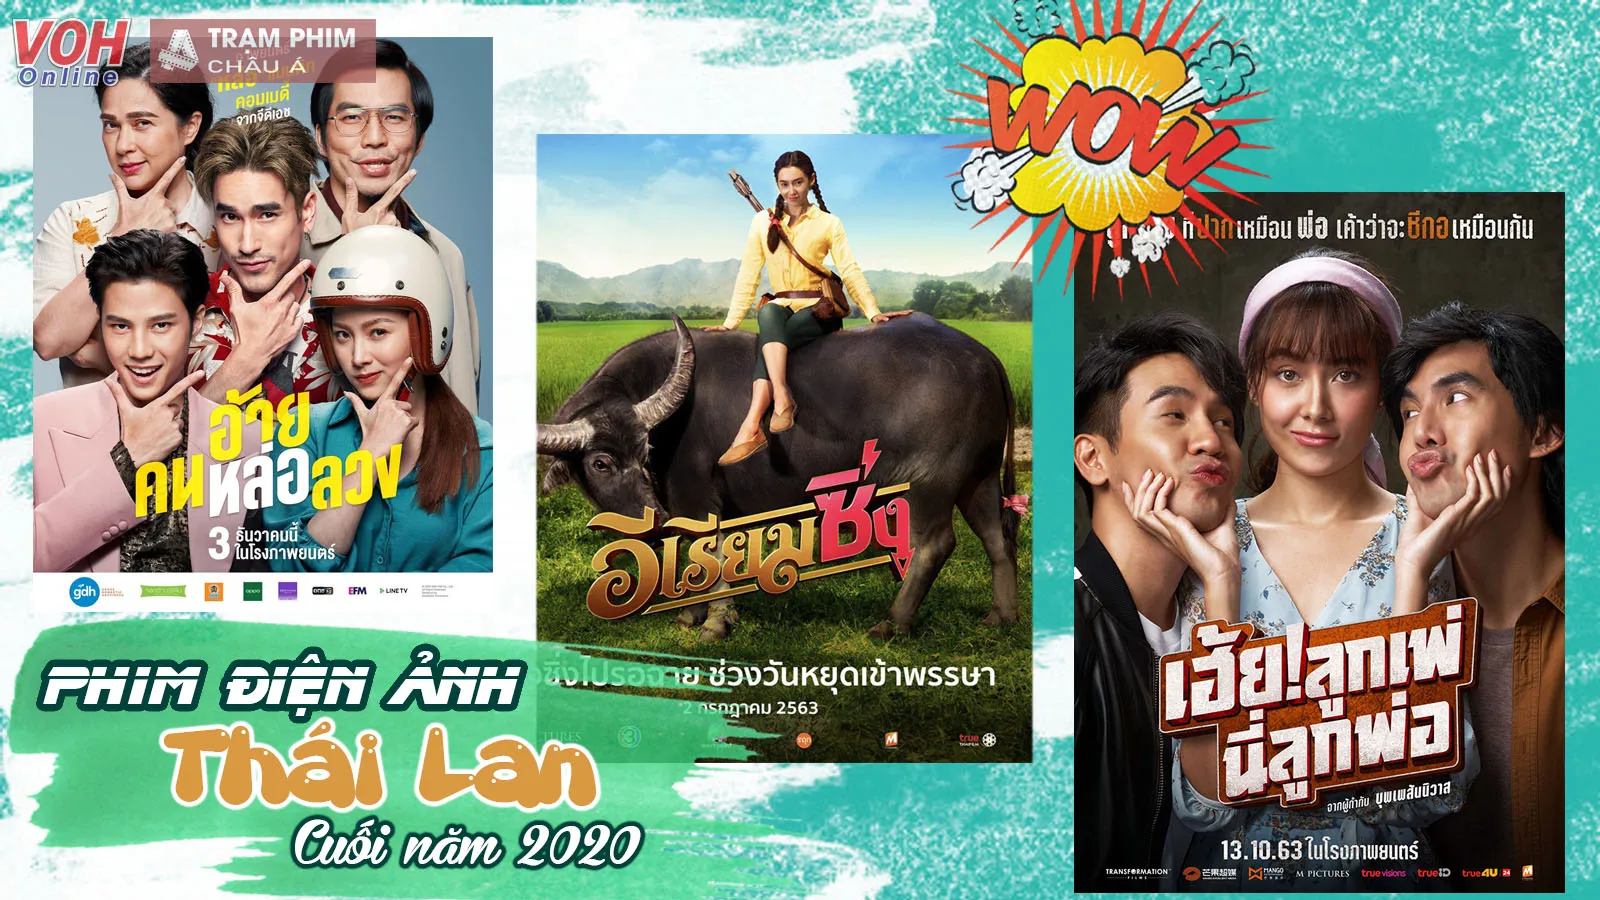 Phim điện ảnh Thái Lan ra mắt cuối năm: Bella Ranee, Baifern Pimchanok đồng loạt đổ bộ